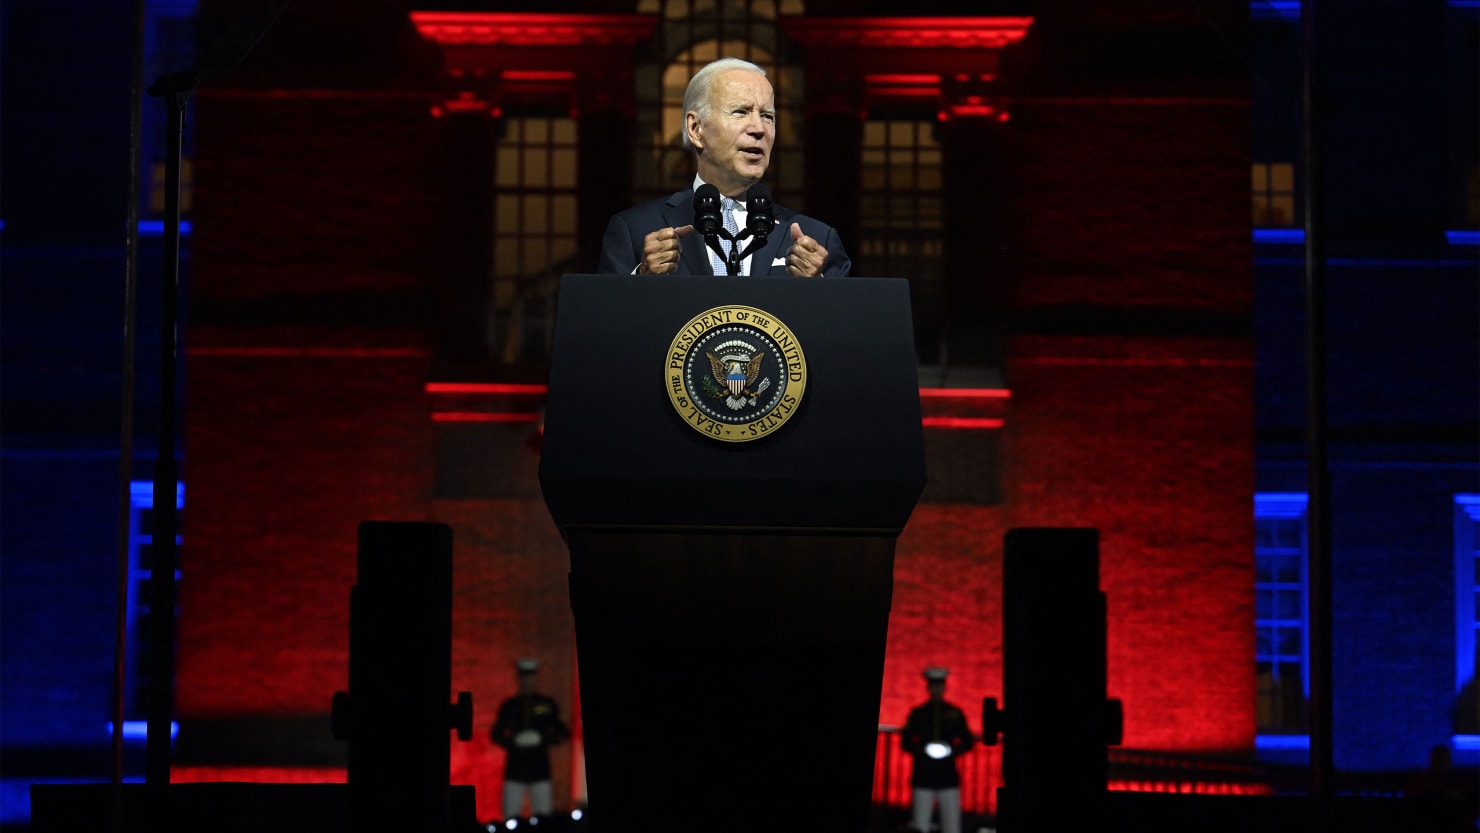 El discurso de Biden ‘Soul of America’ fue solo un anuncio de campaña demócrata